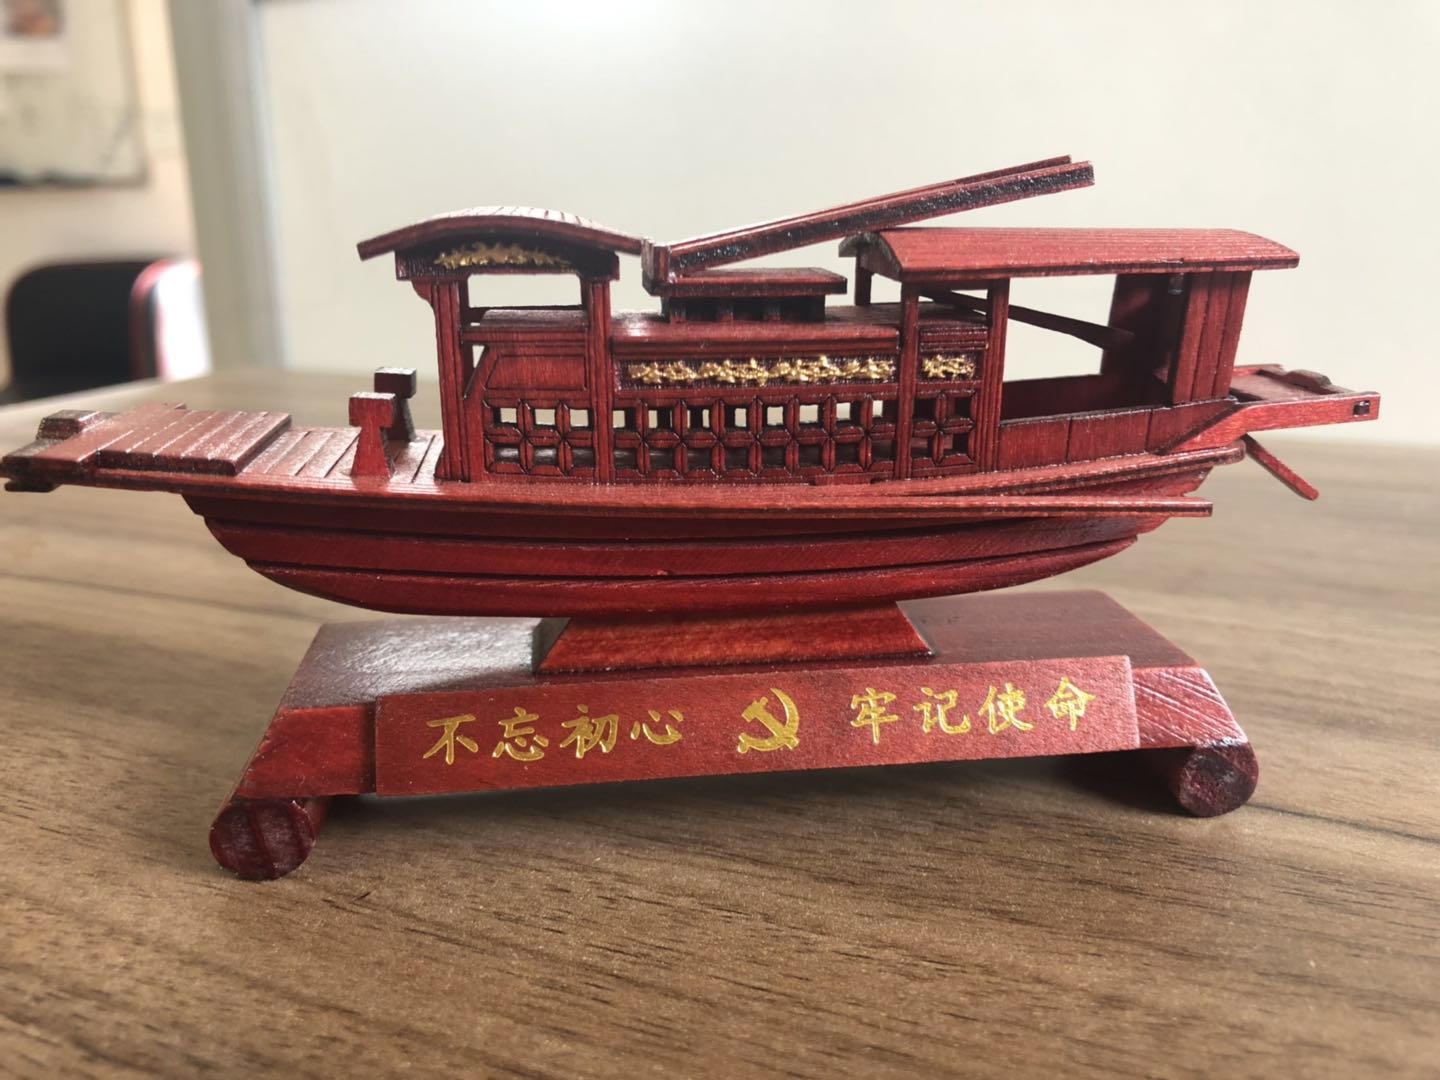 木船嘉兴南湖红船一大纪念红船模型红船精神纯手工制作华海木船